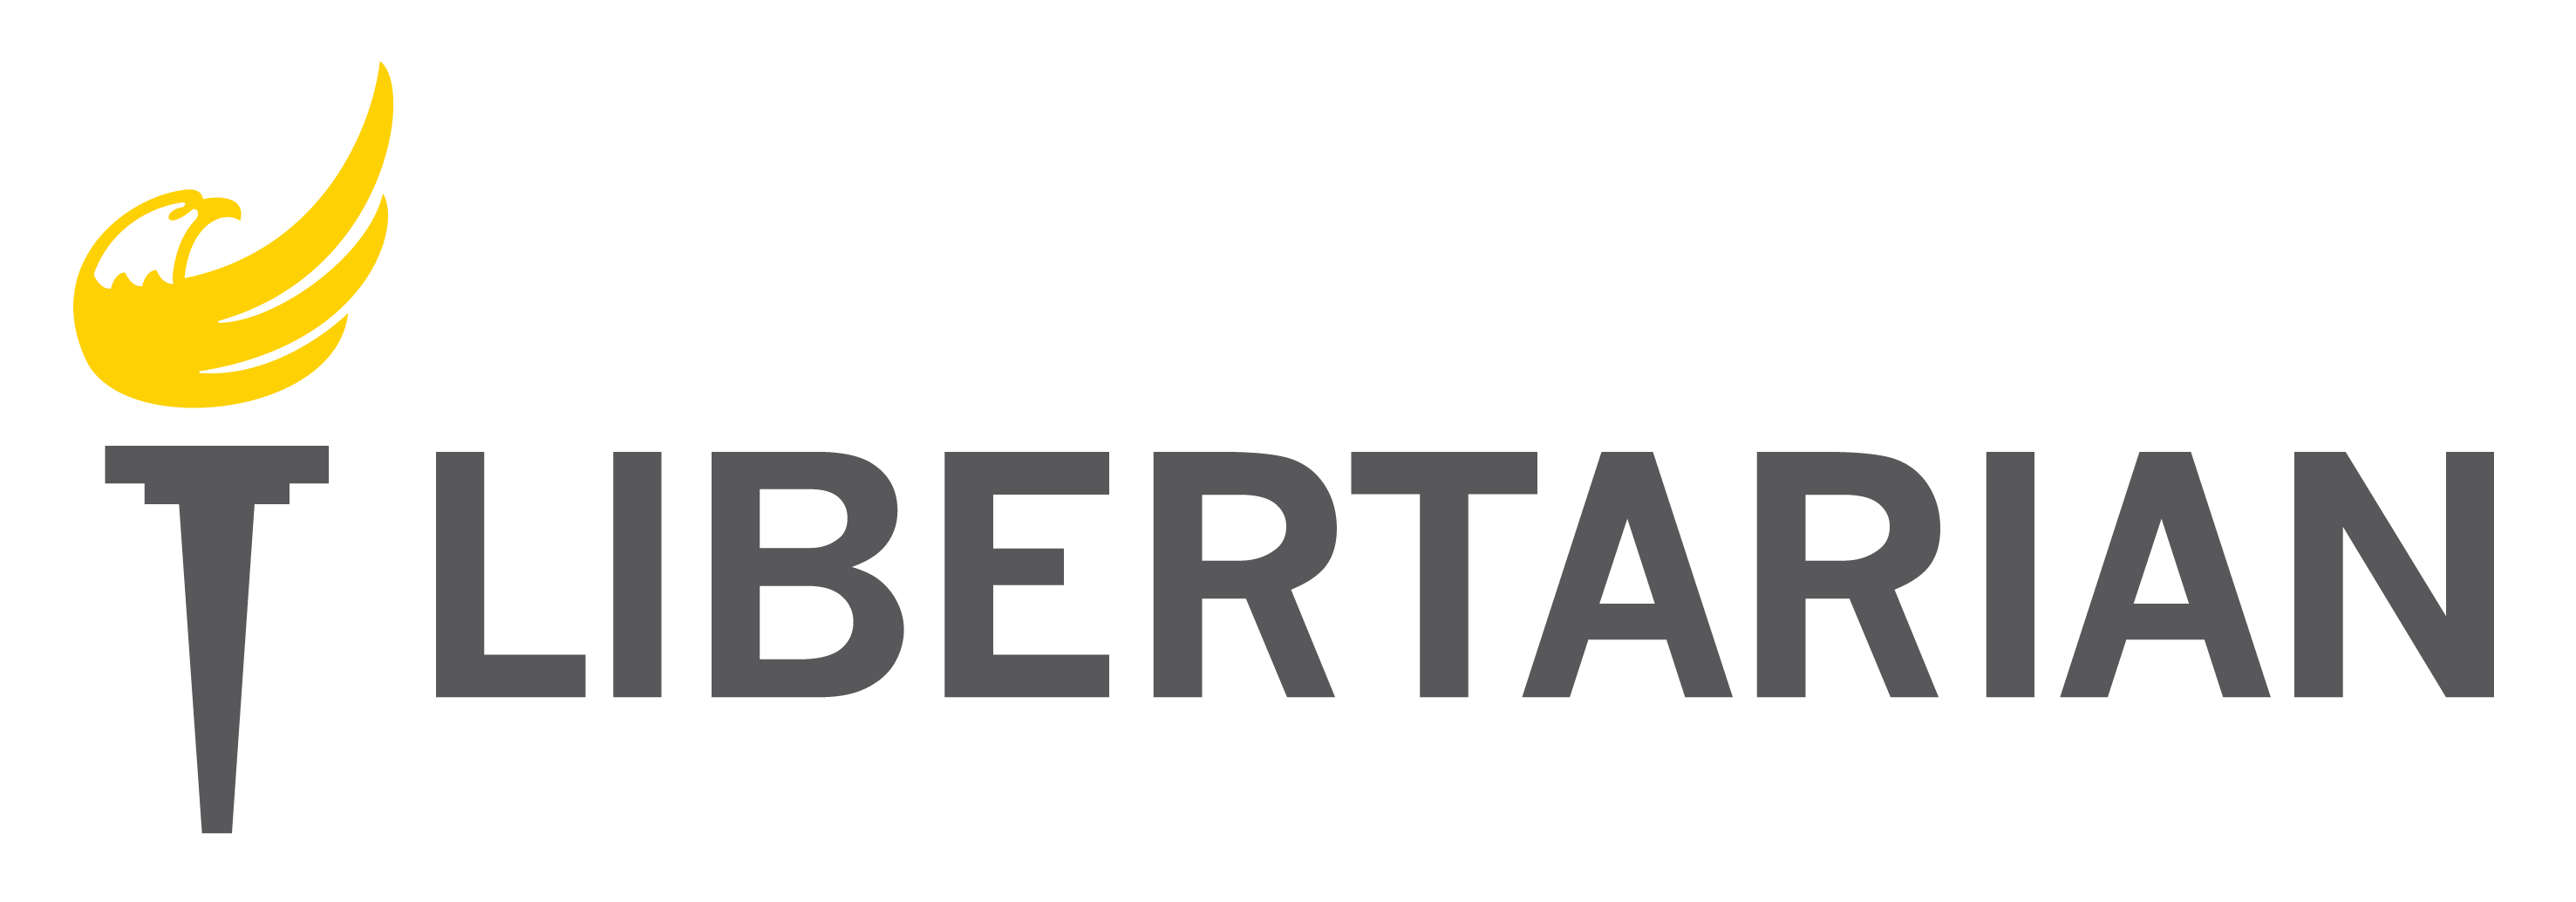 Libertarian Logo - Libertarian Party logo artwork; high-resolution transparent PNG ...